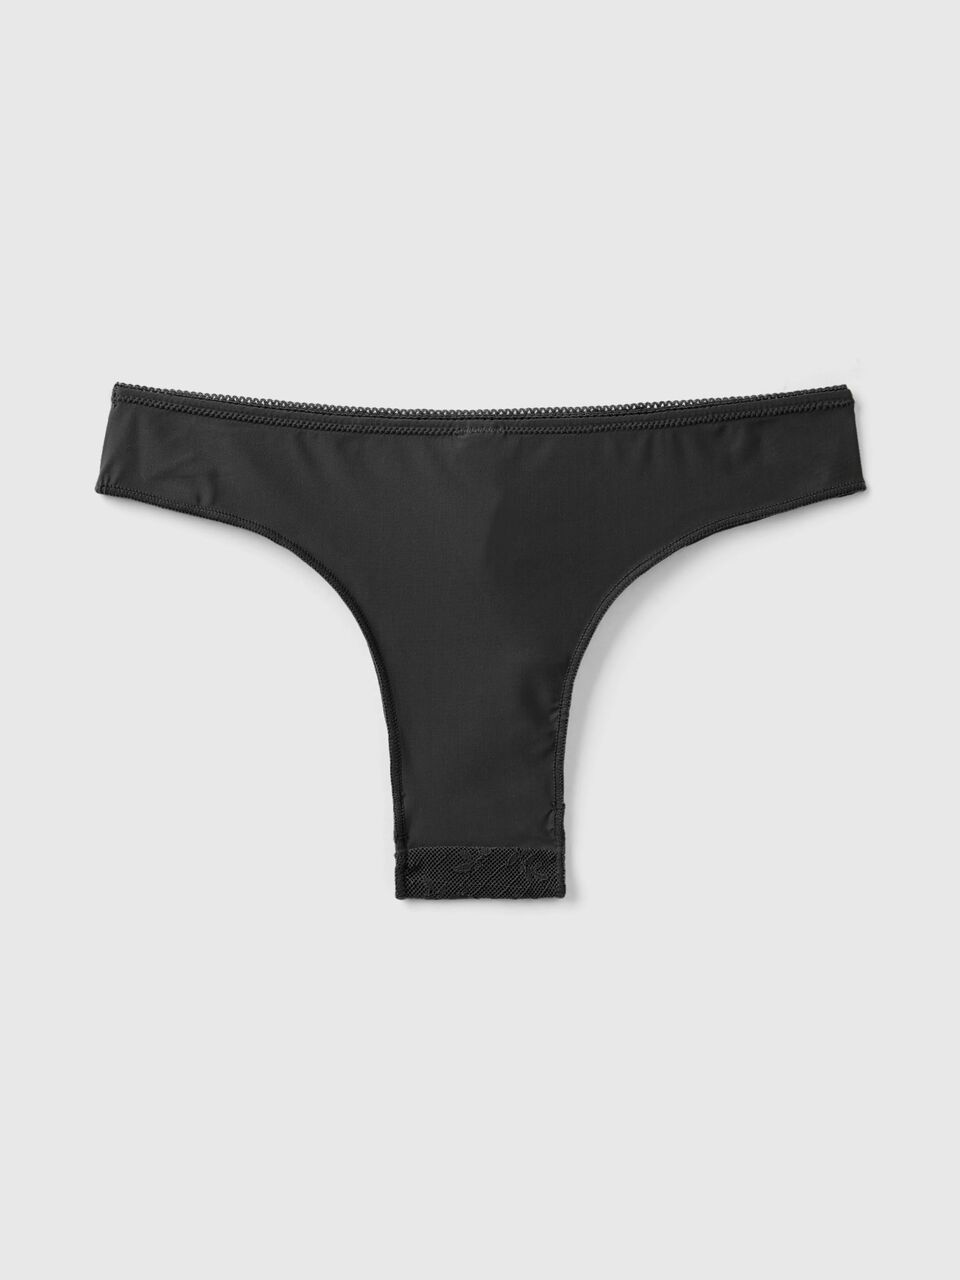 Brazilian underwear in microfiber lace - Black